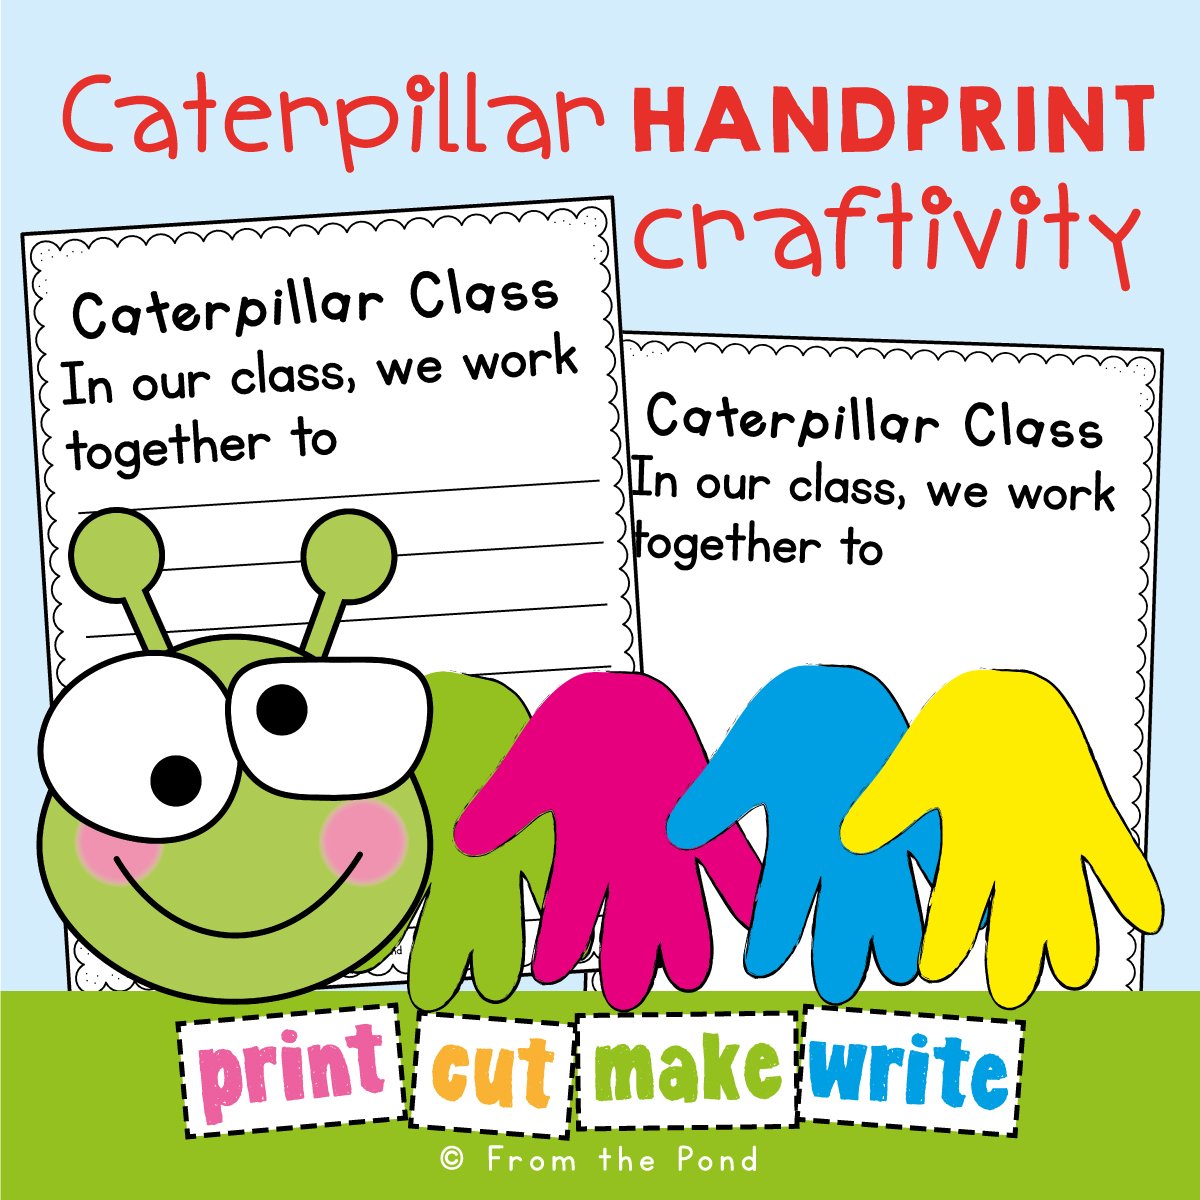 Handprint Caterpillar